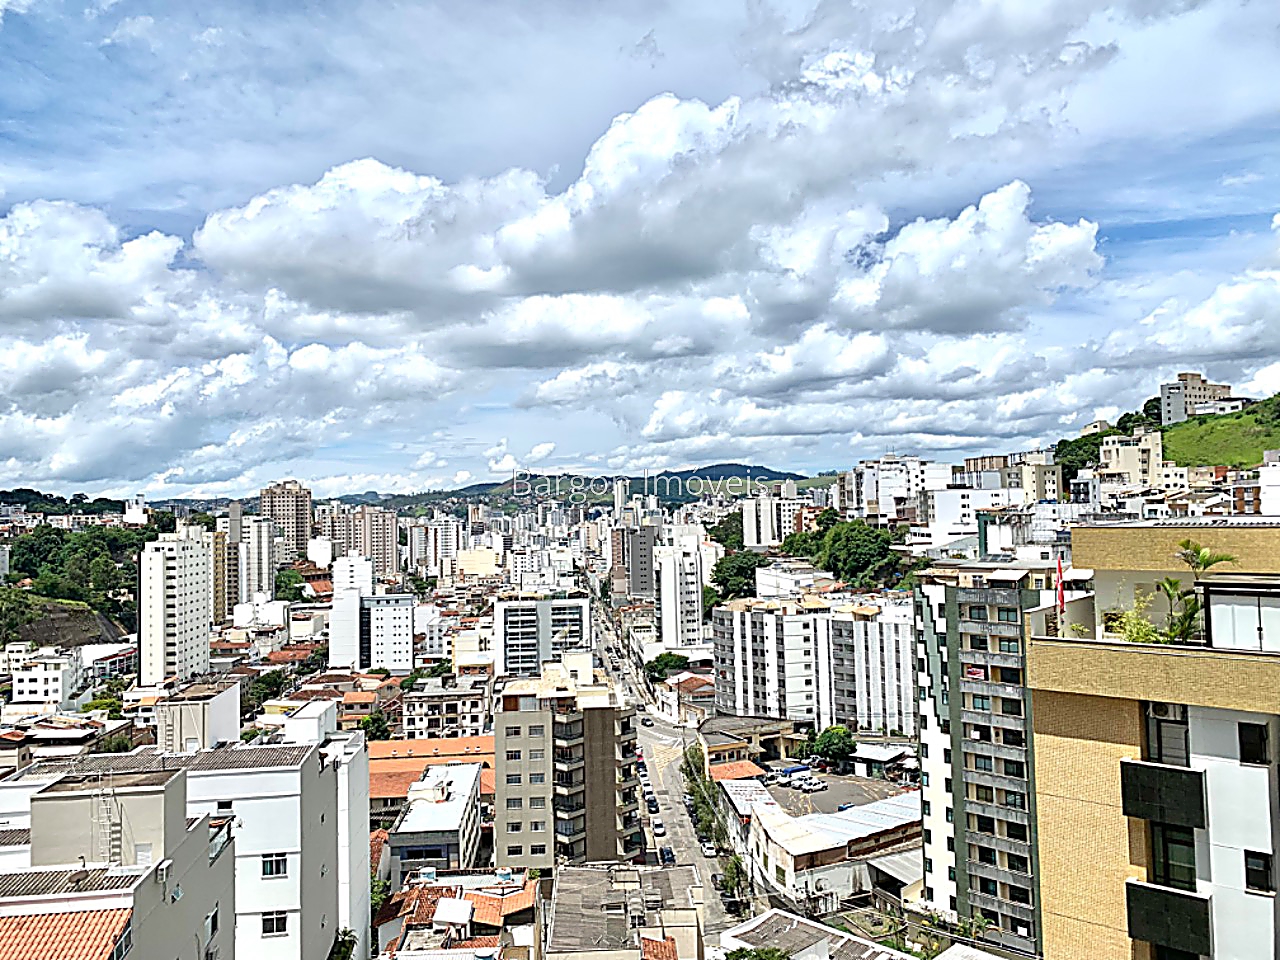 Apartamento à venda em São Mateus, Juiz de Fora - MG - Foto 8